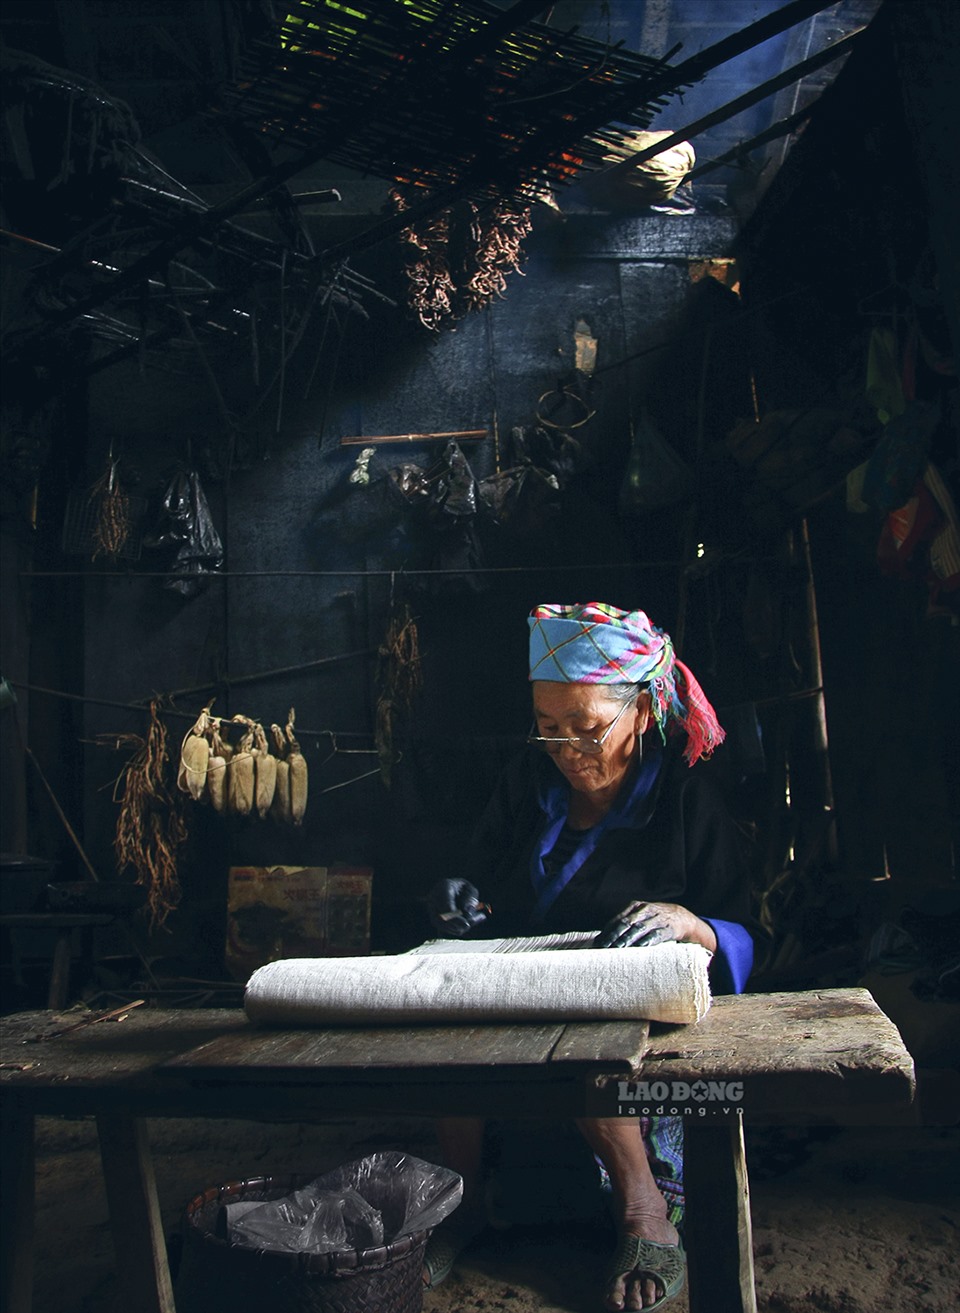 Do xu thế phát triển trong một xã hội hiện đại, sự giao thoa mạnh mẽ của các nền văn hóa nên ngày nay nghệ thuật trang trí hoa văn trên trang phục của dân tộc Mông đã dần mai một. Chỉ còn lại một số ít gia đình, địa phương duy trì nghề truyền thống này.